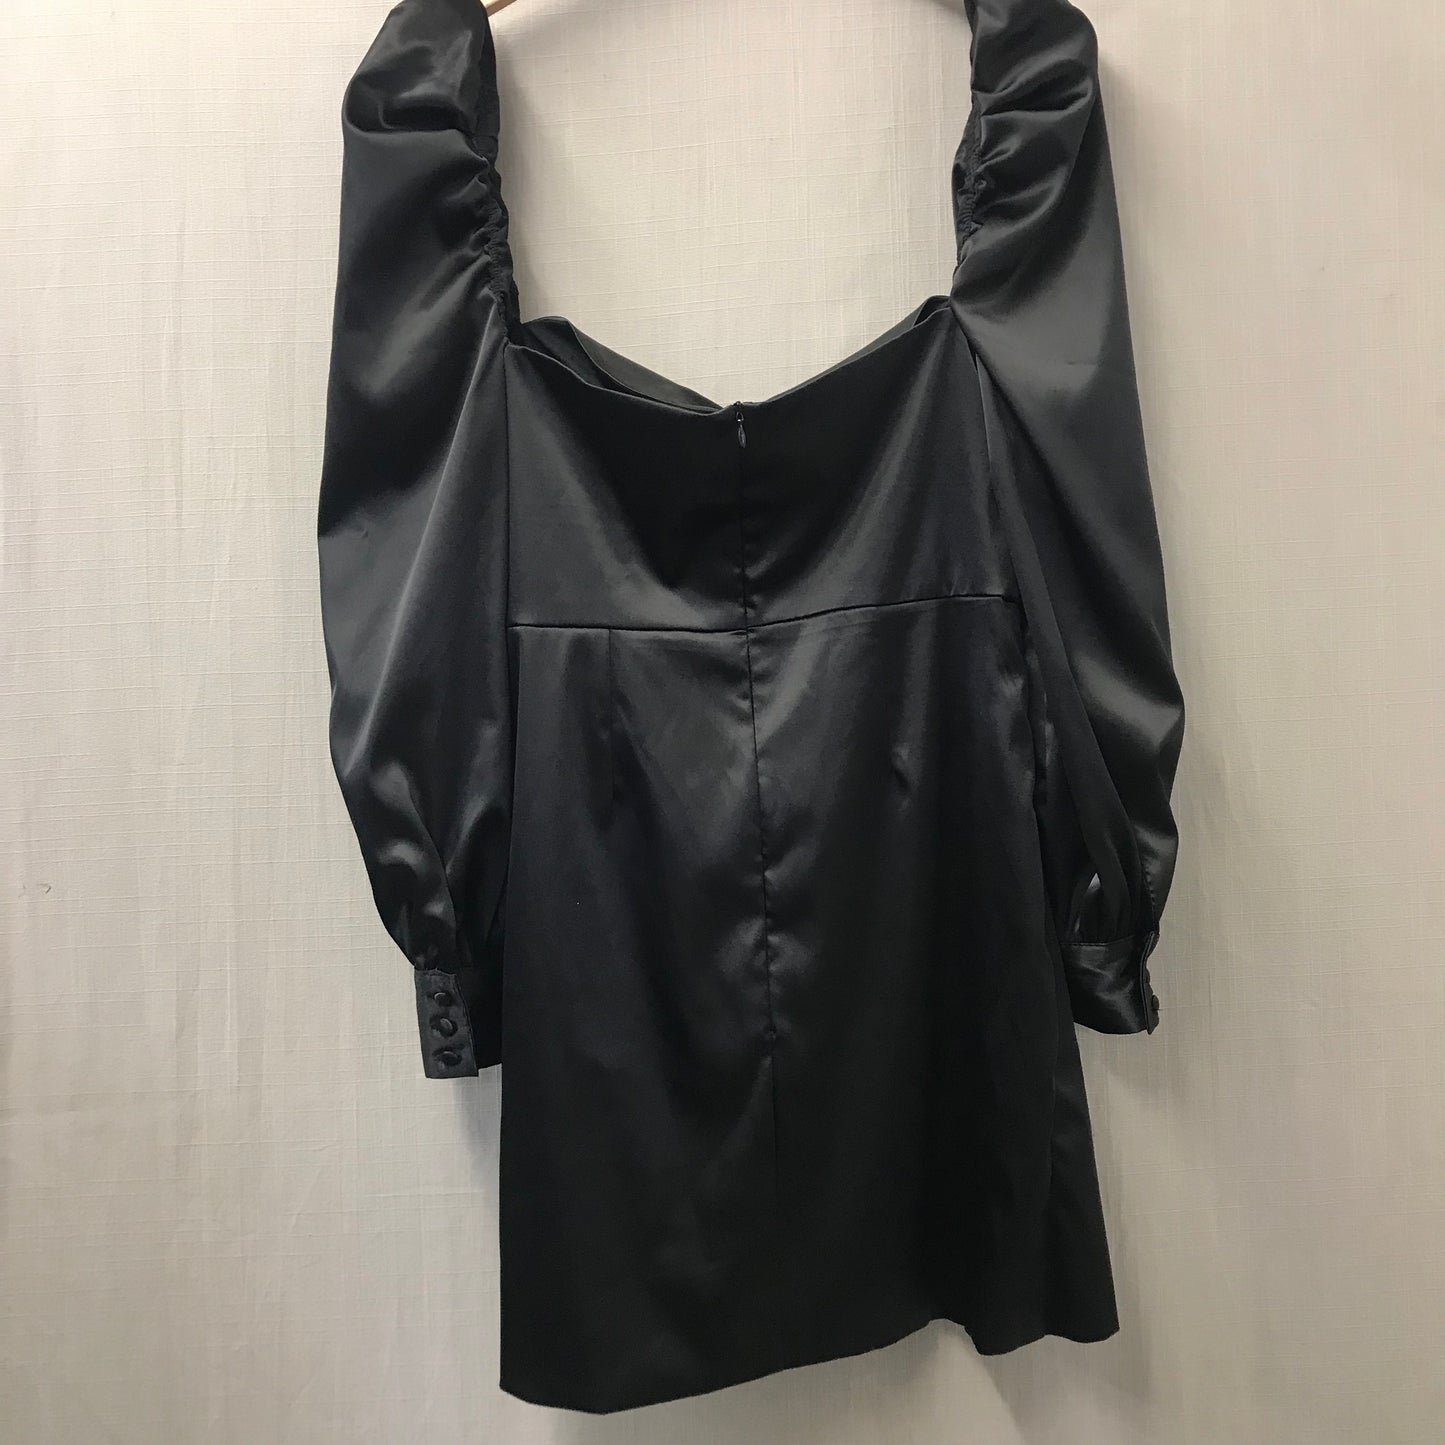 NB Avenue Black Satin Mini Dress Size Large BNWT